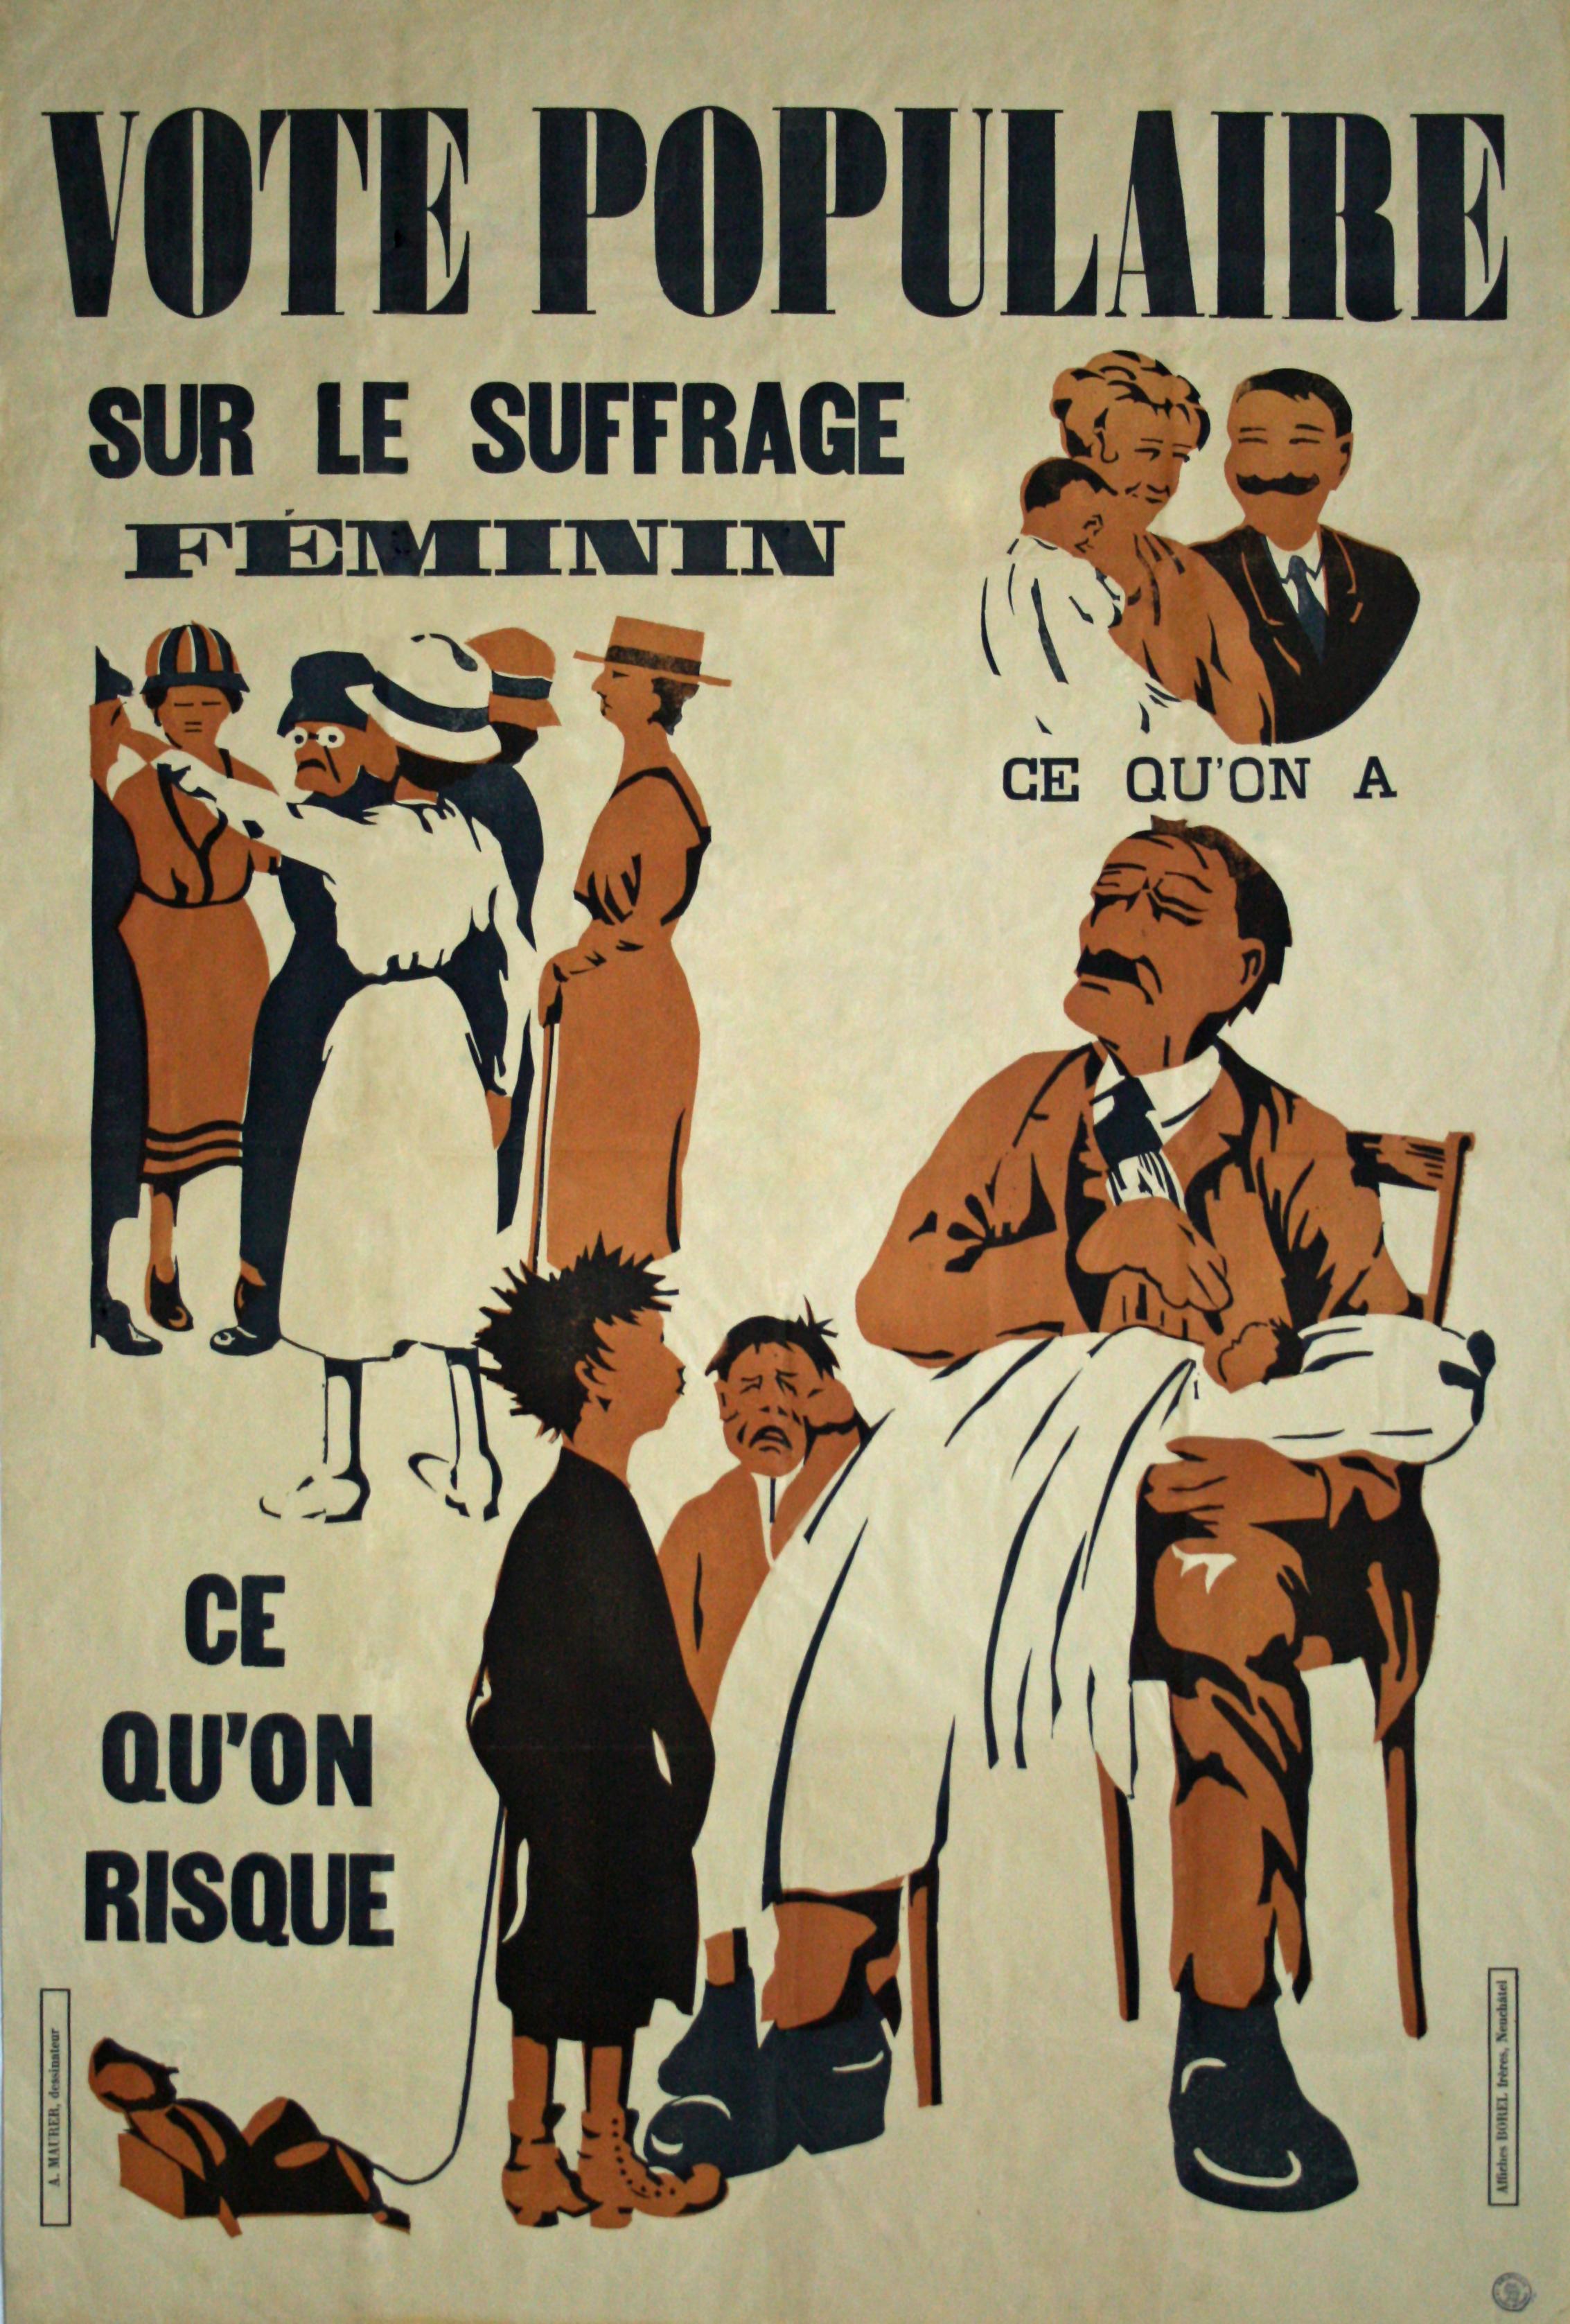 L'une des affiches du vote populaire sur le suffrage féminin, en 1919. [Neuchâtel. Borel frères, 1919. Bibliothèque de la Ville de La Chaux-de-Fonds. Département audiovisuel (DAV). Reproduction.]